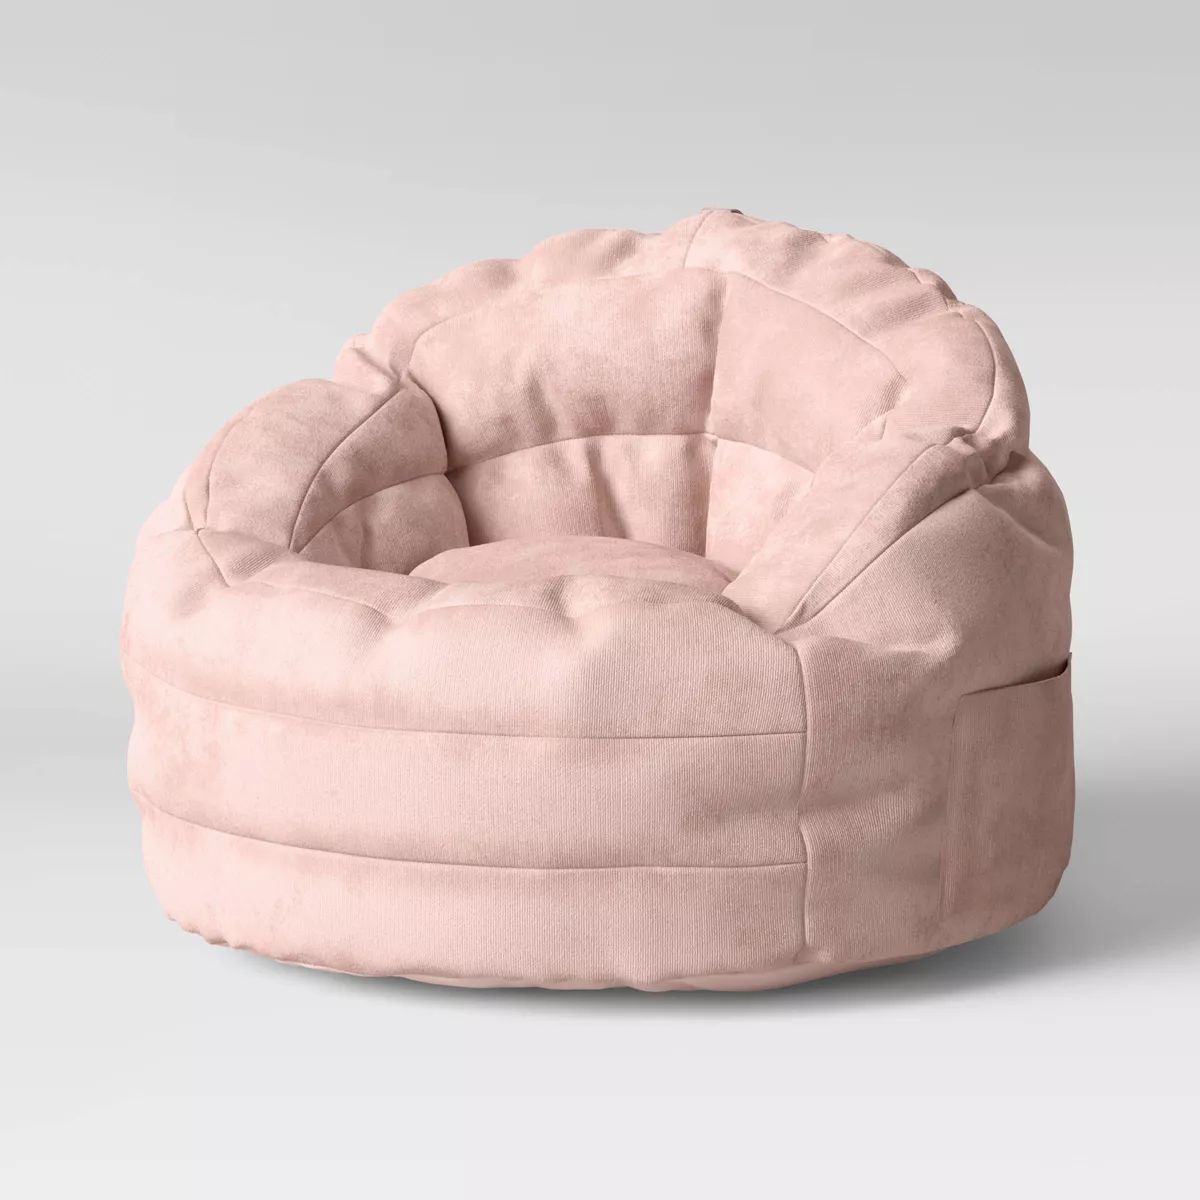 Settle In Kids' Bean Bag Chair Gray - Pillowfort™ | Target